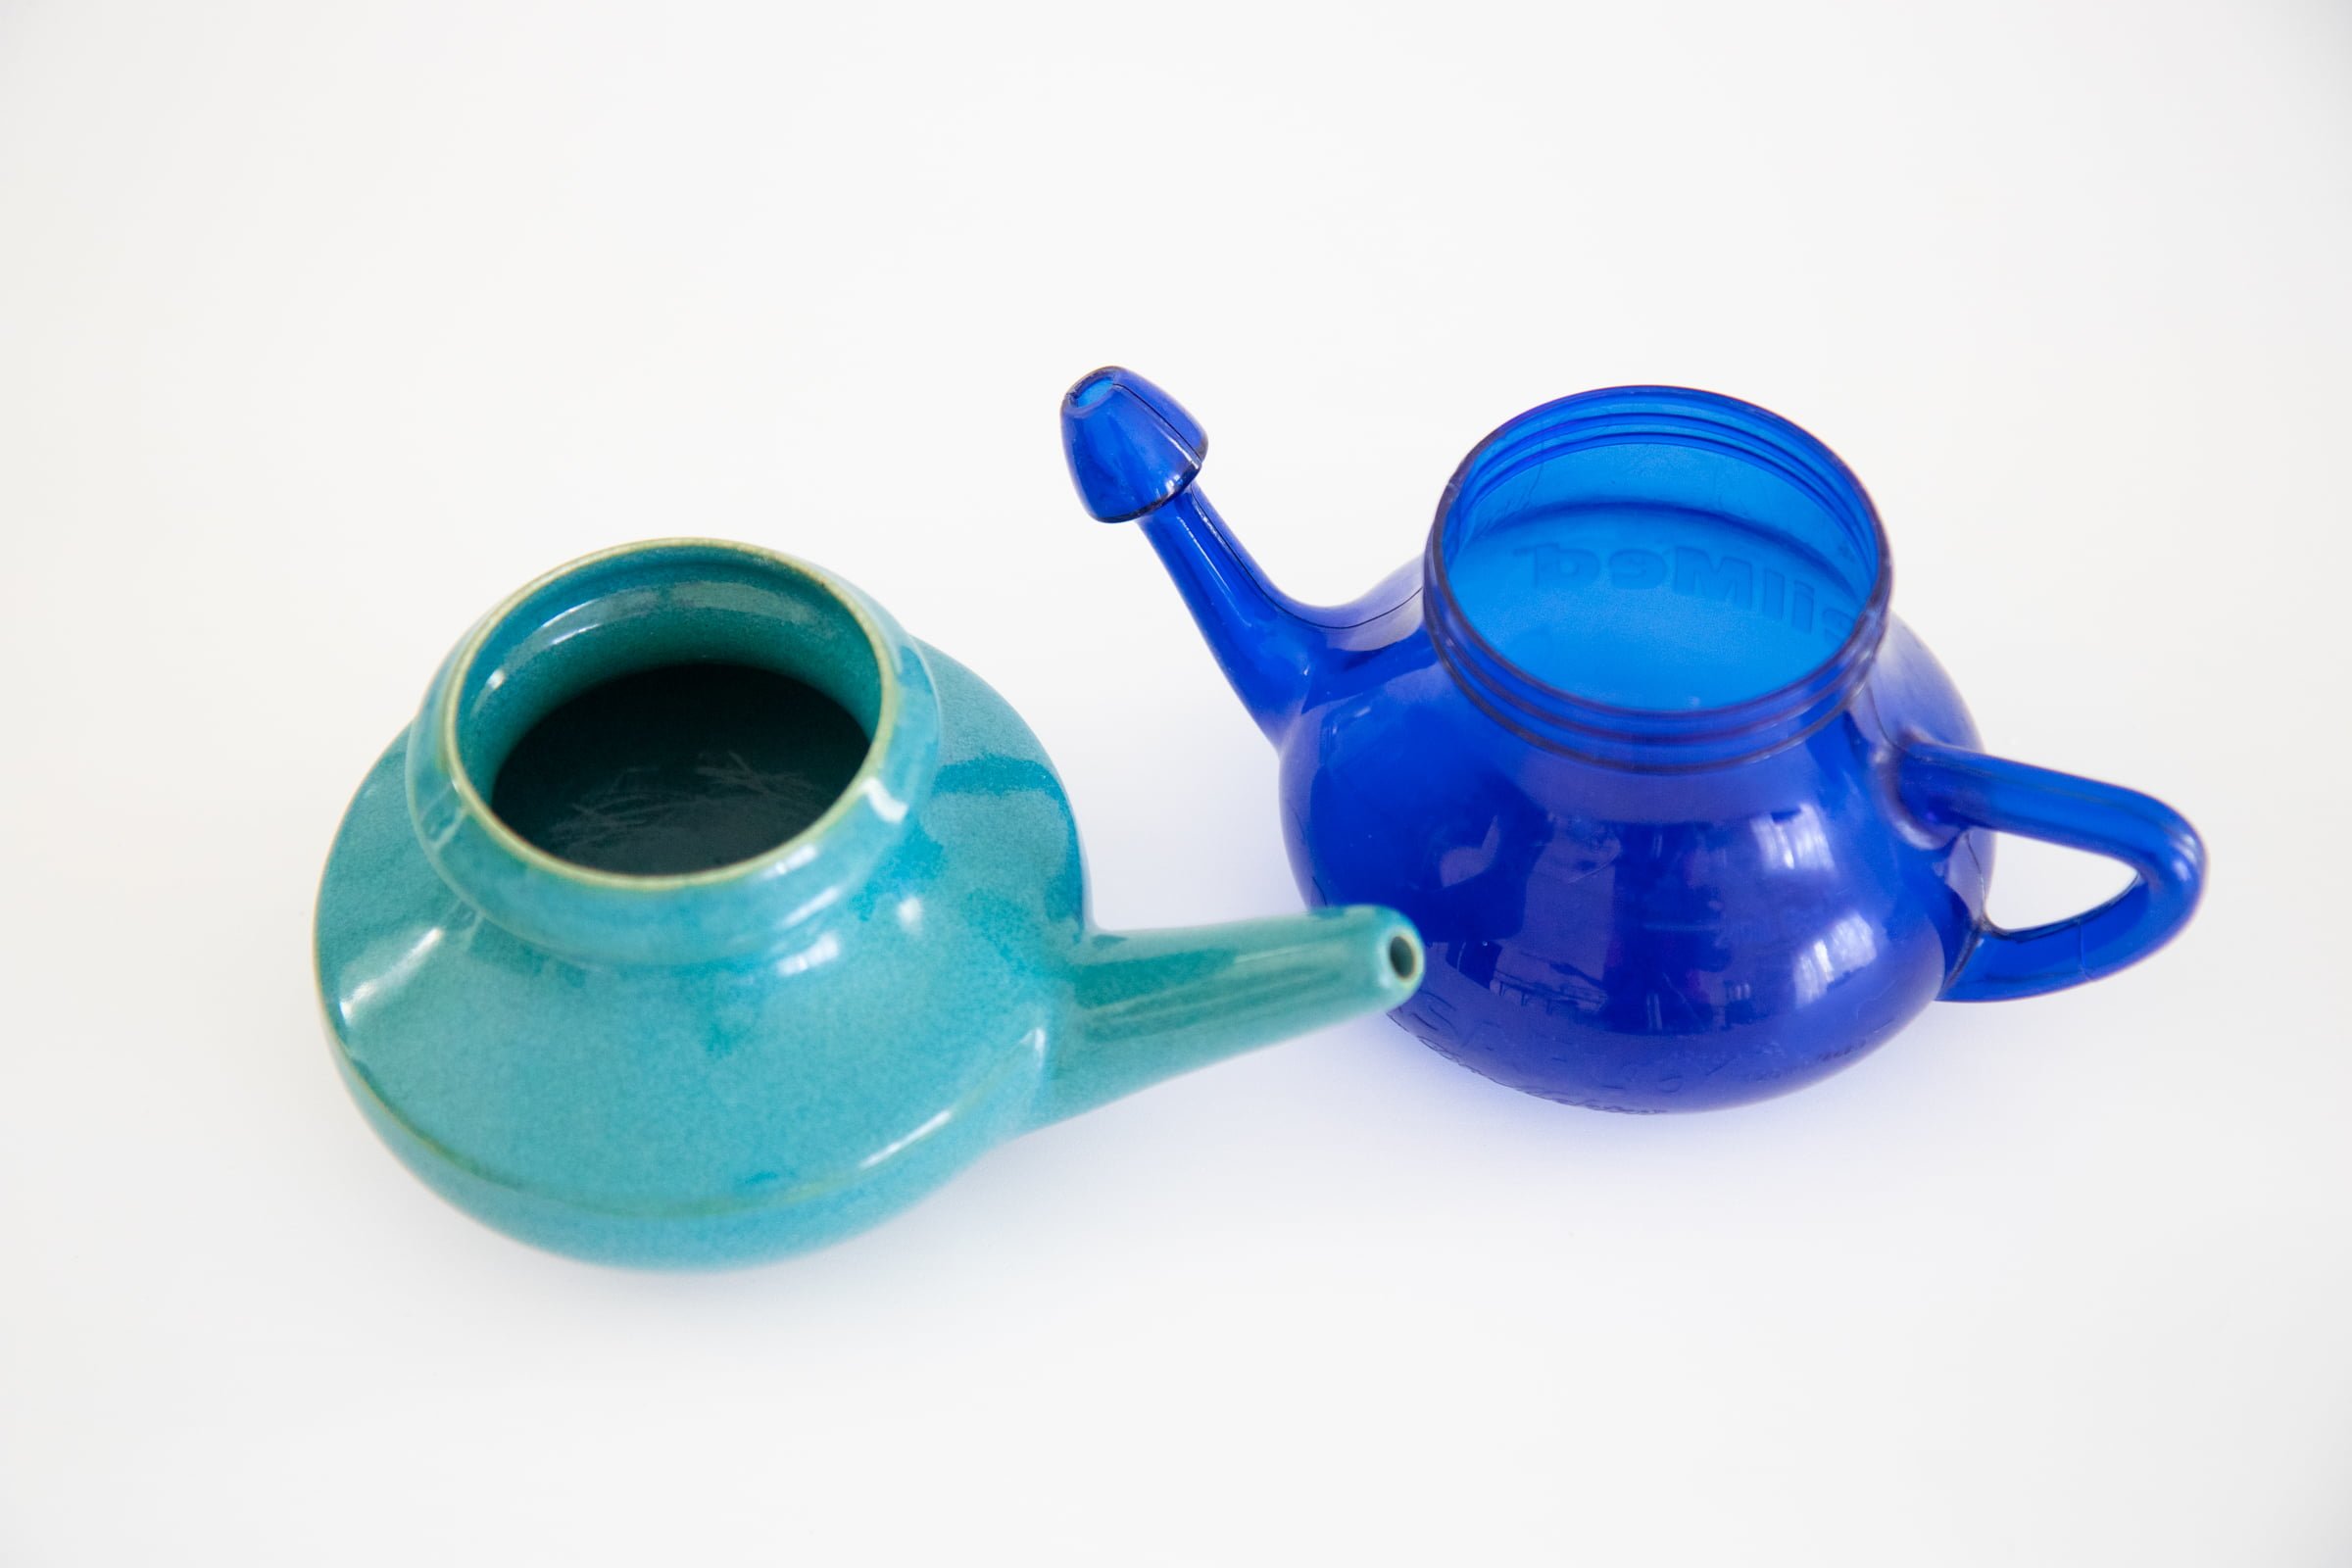 Ceramic neti pot next to a blue plastic neti pot.